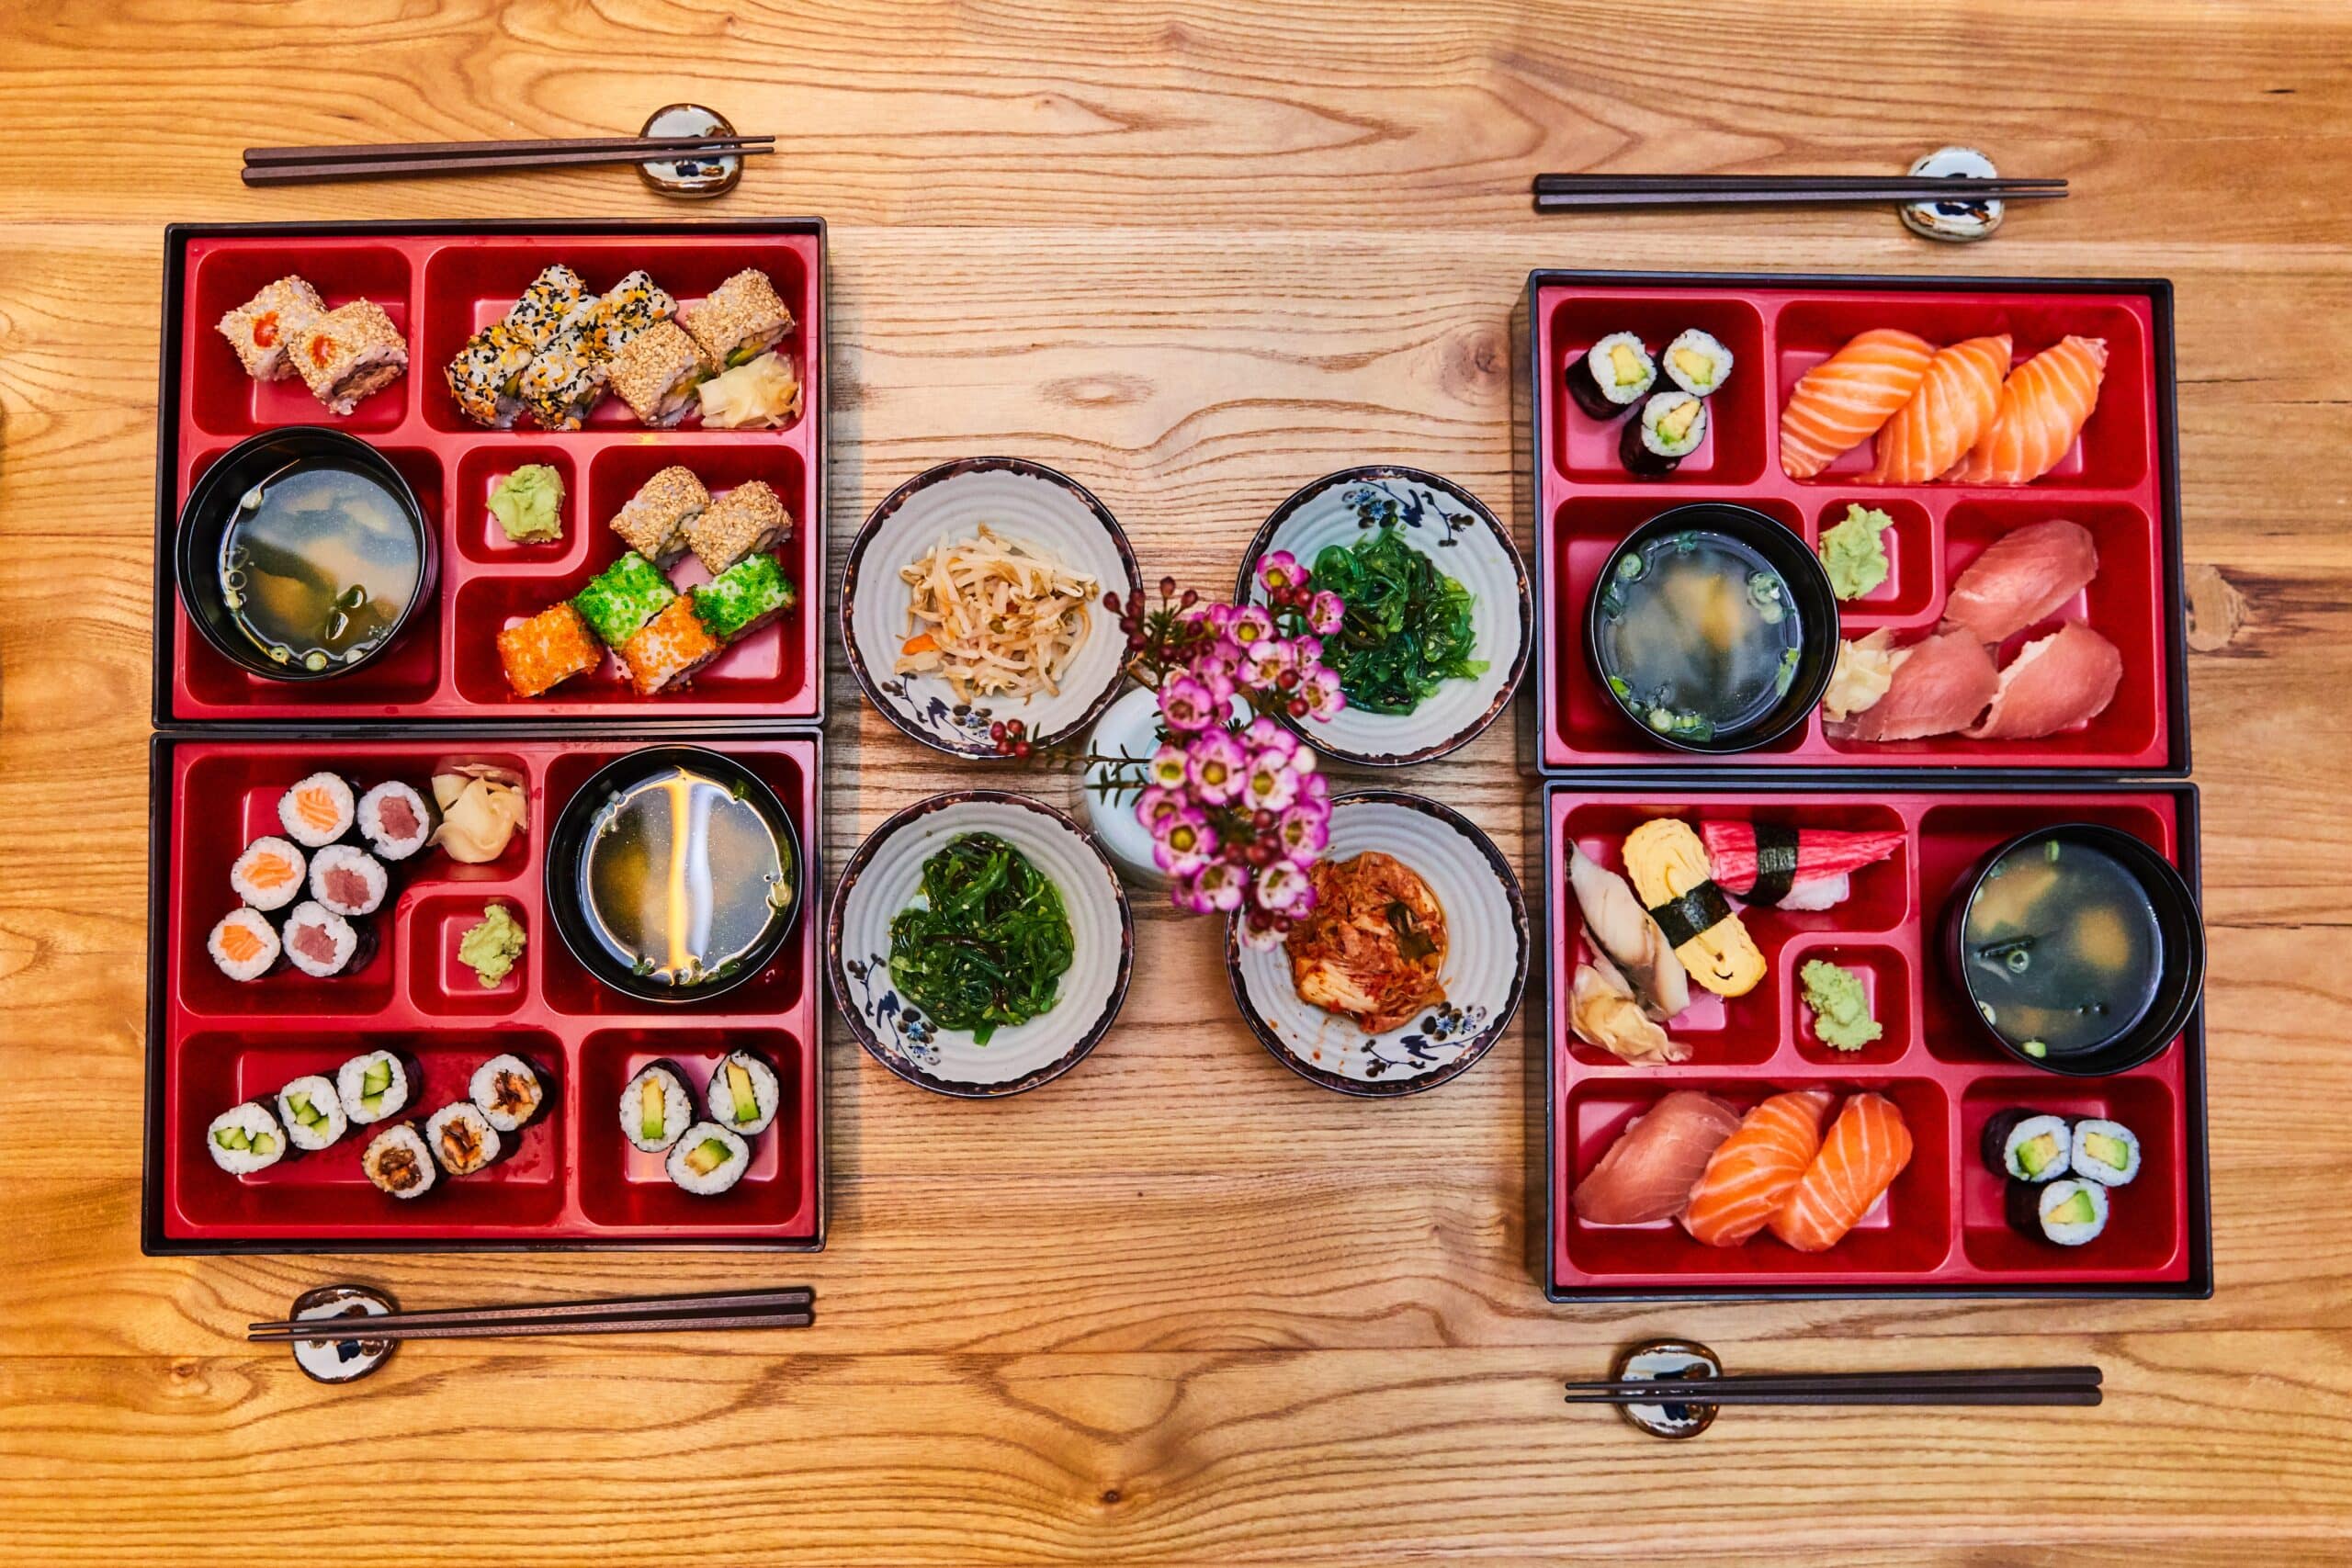 sashimi and nigiri sushi